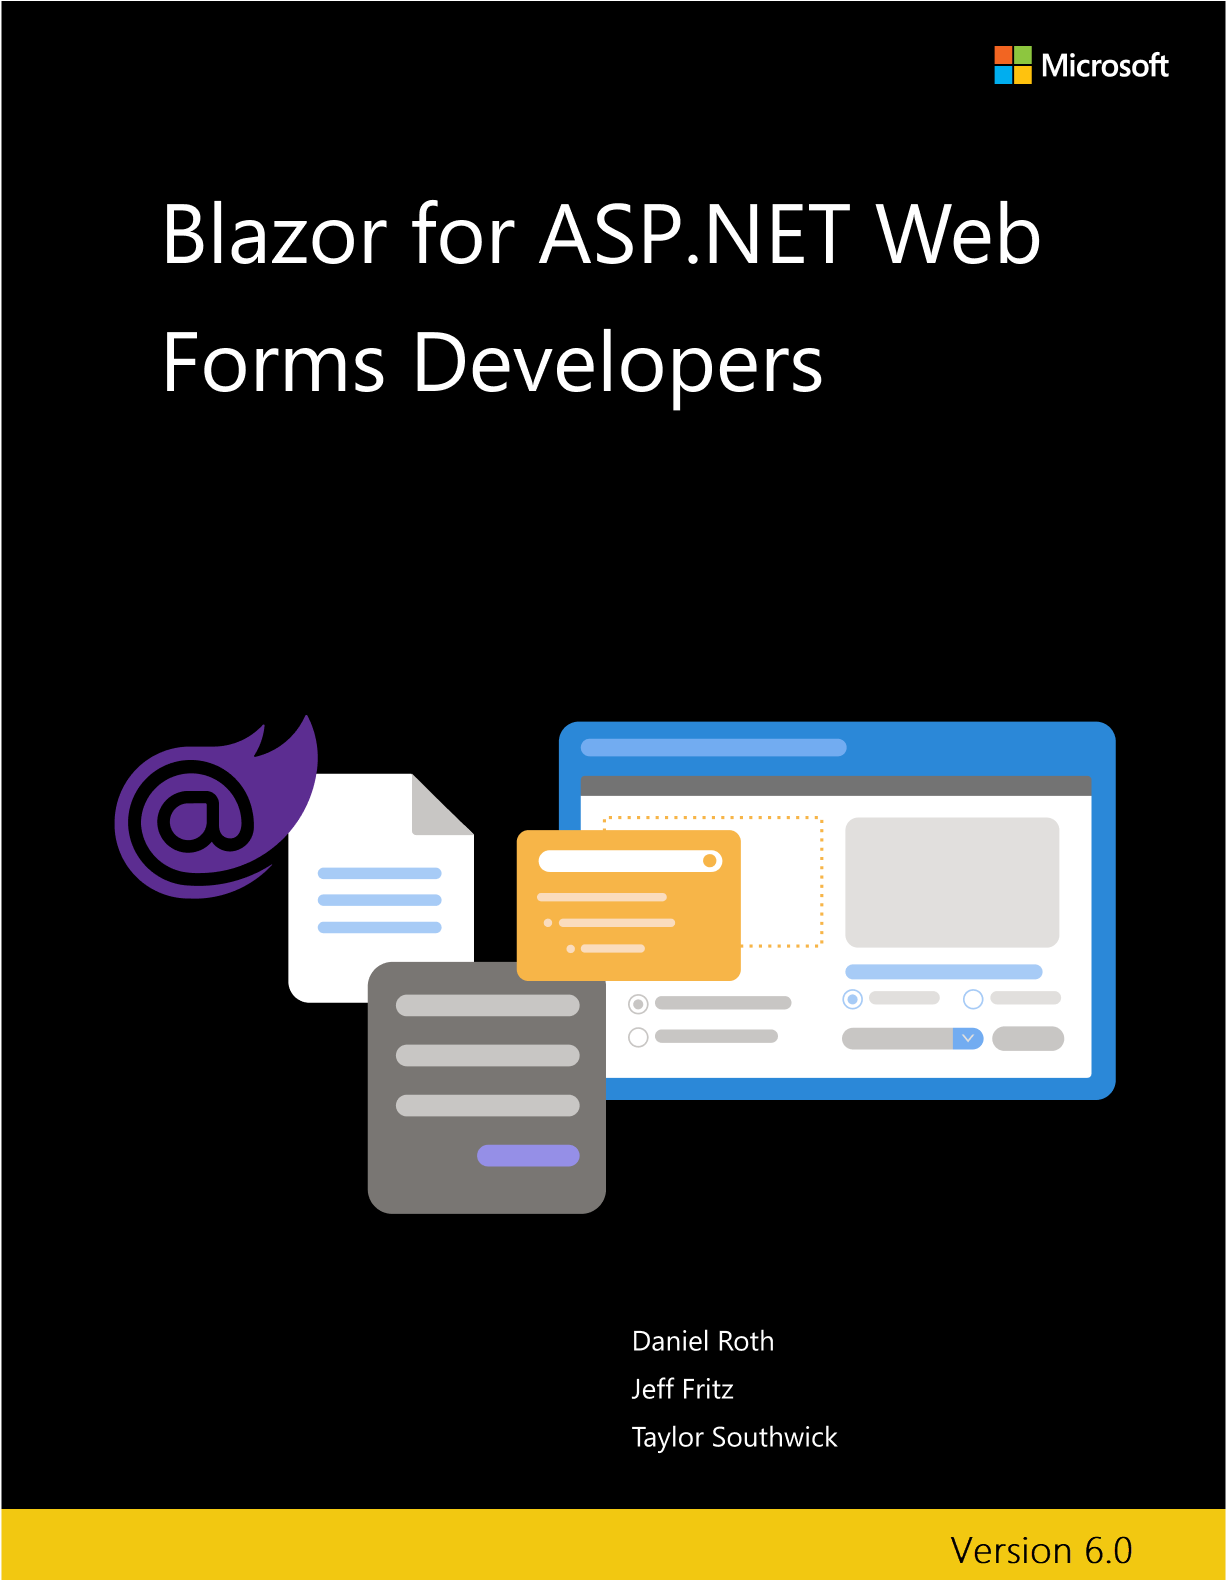 Portada del libro electrónico de Blazor para desarrolladores de ASP.NET Web Forms.